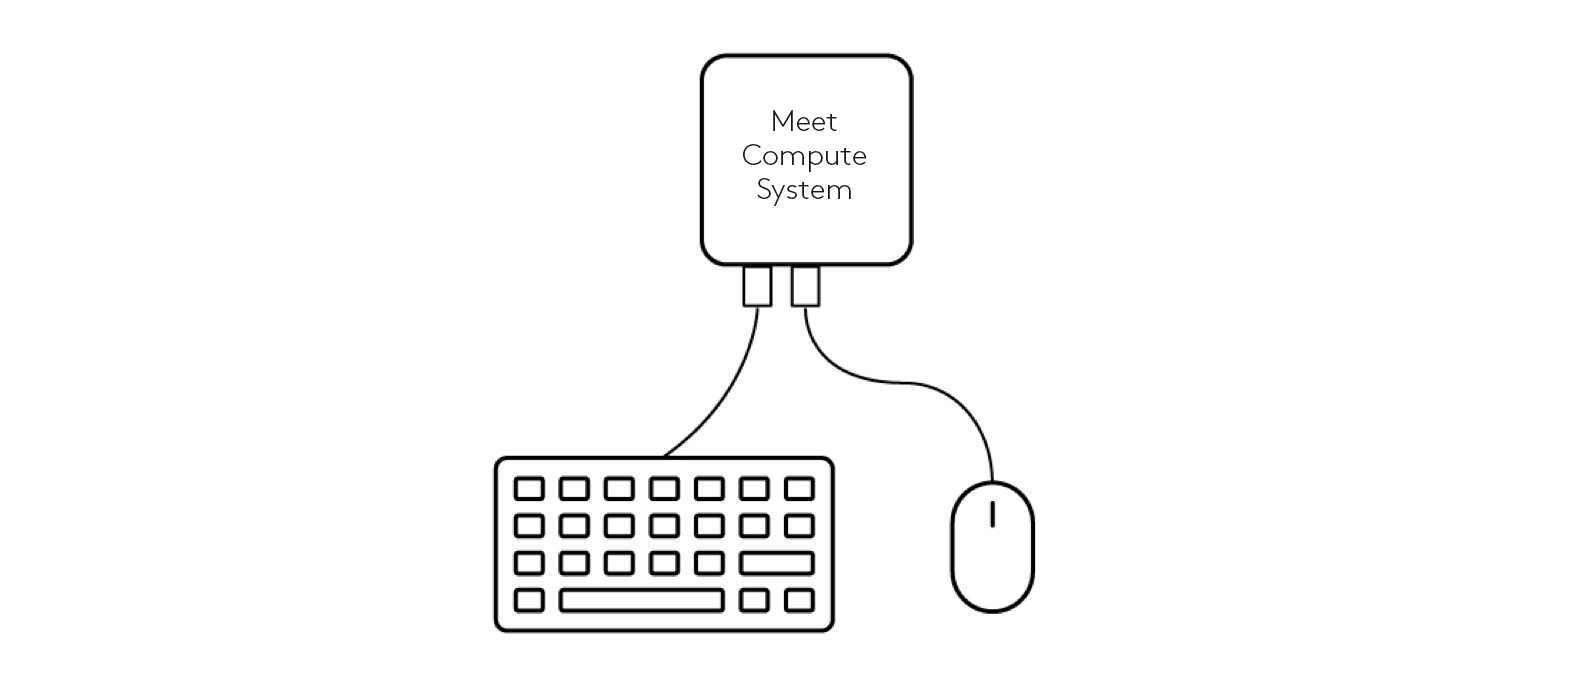 Aansluitingsschema voor toetsenbord en muis met Meet Compute System